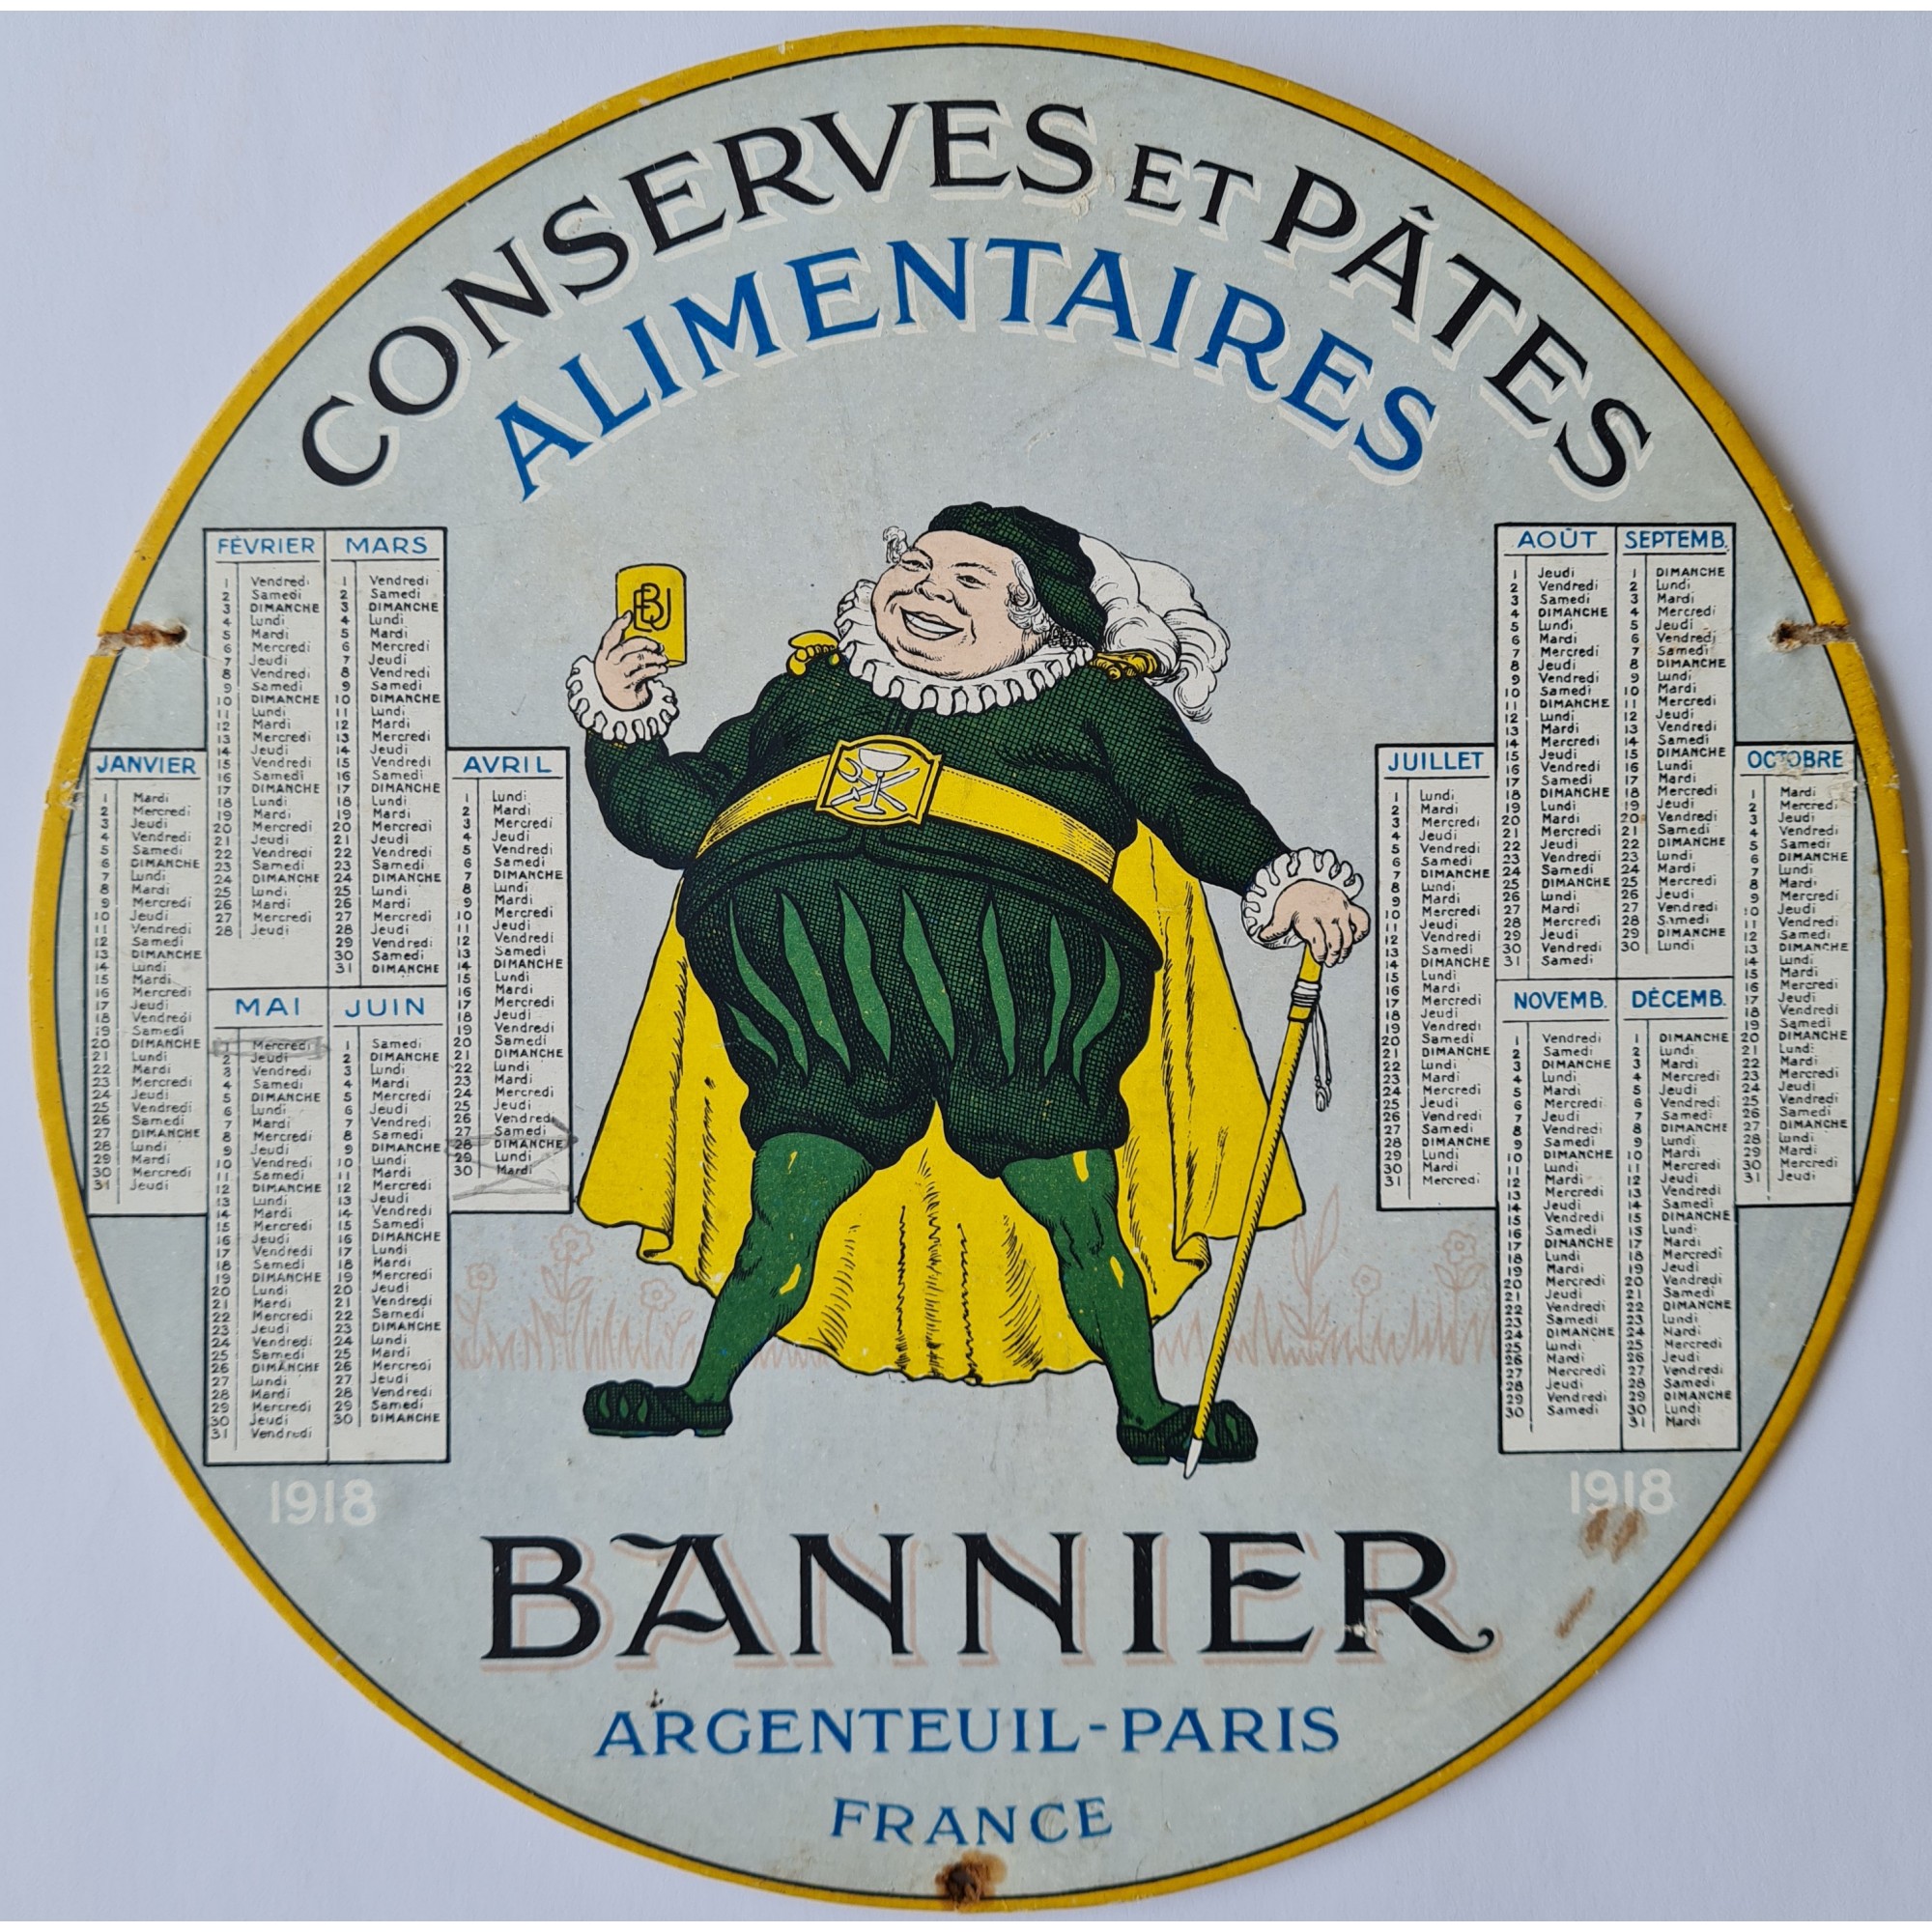 1918 - Bannier - Argenteuil - Paris